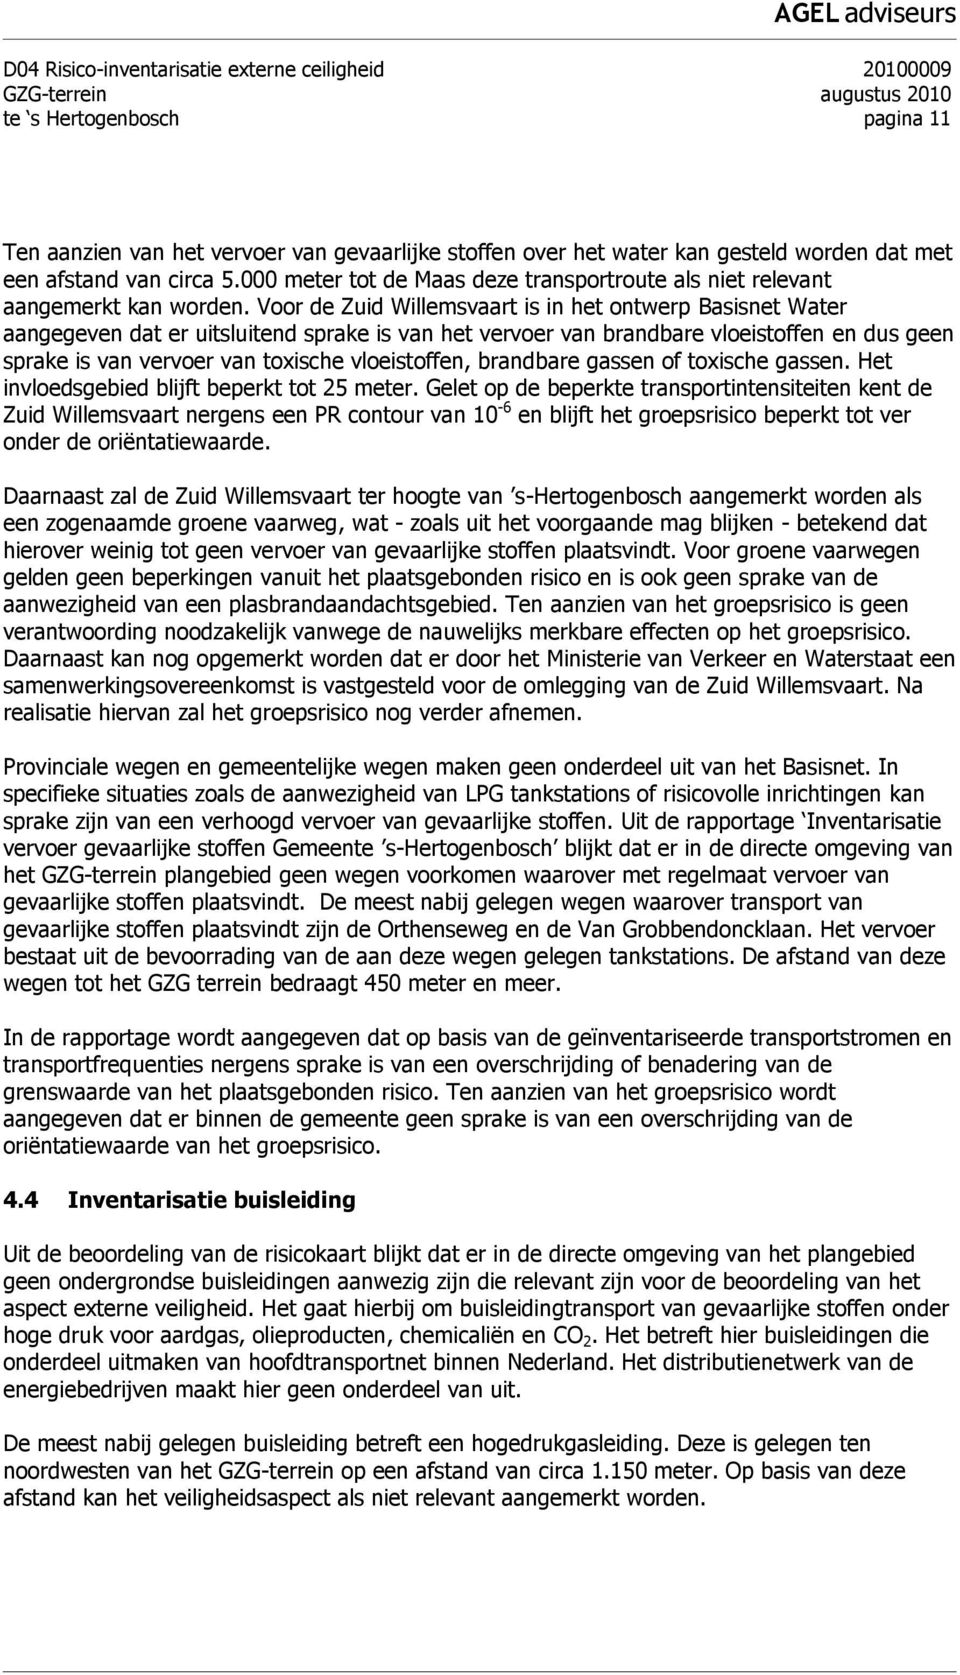 Voor de Zuid Willemsvaart is in het ontwerp Basisnet Water aangegeven dat er uitsluitend sprake is van het vervoer van brandbare vloeistoffen en dus geen sprake is van vervoer van toxische